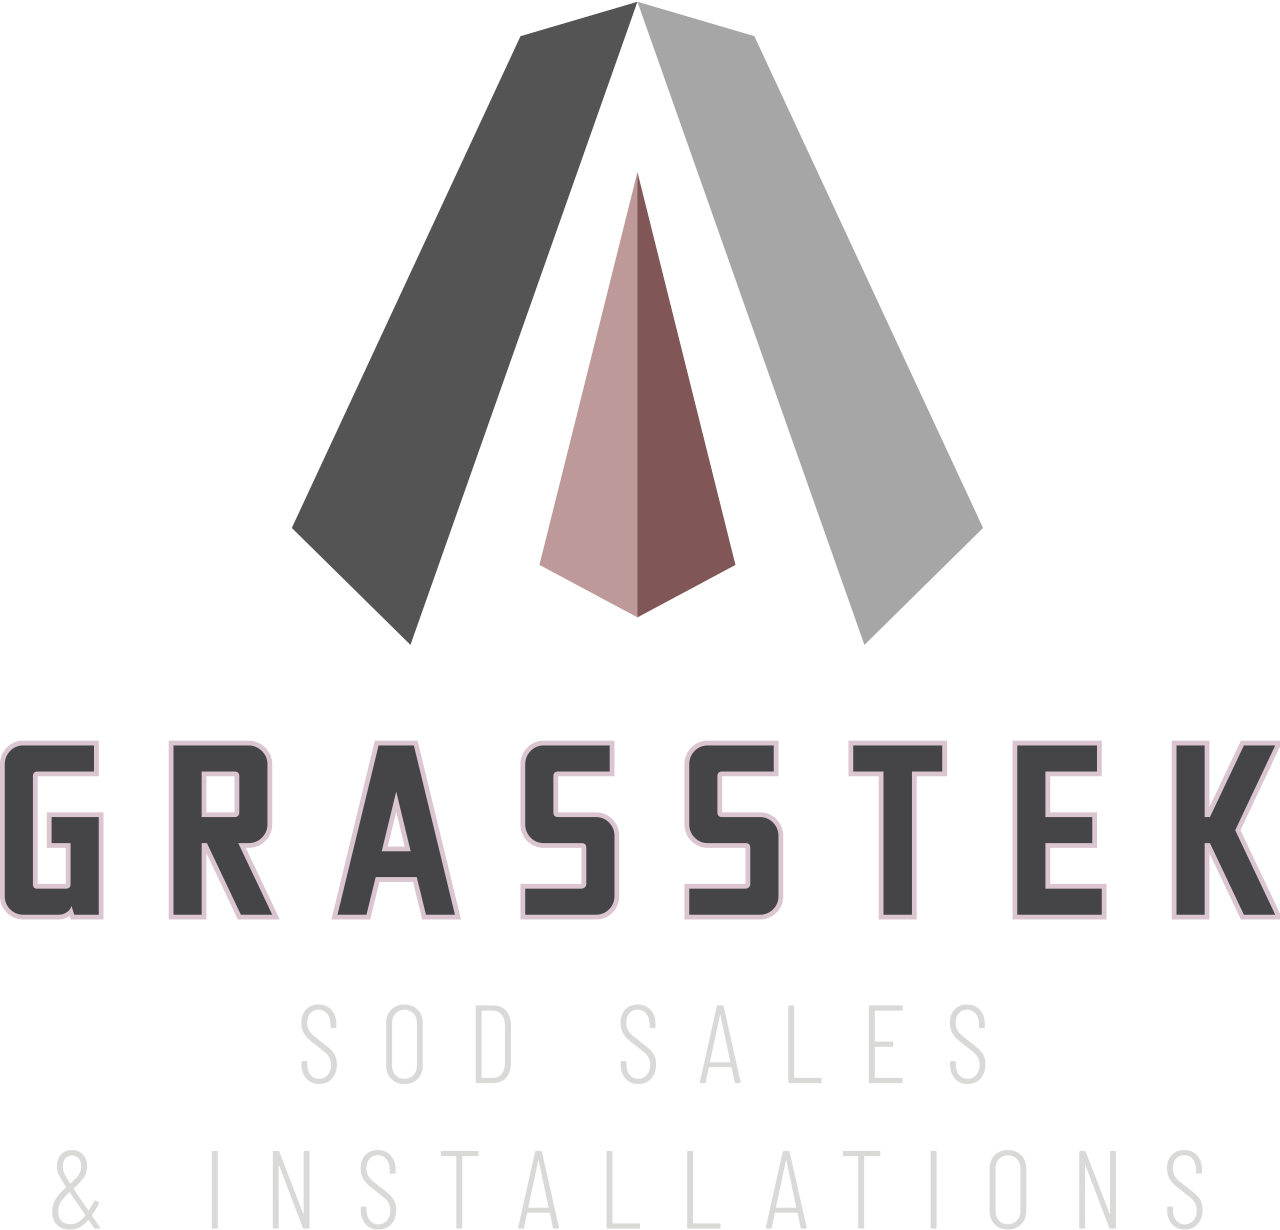 GrassTek's logo